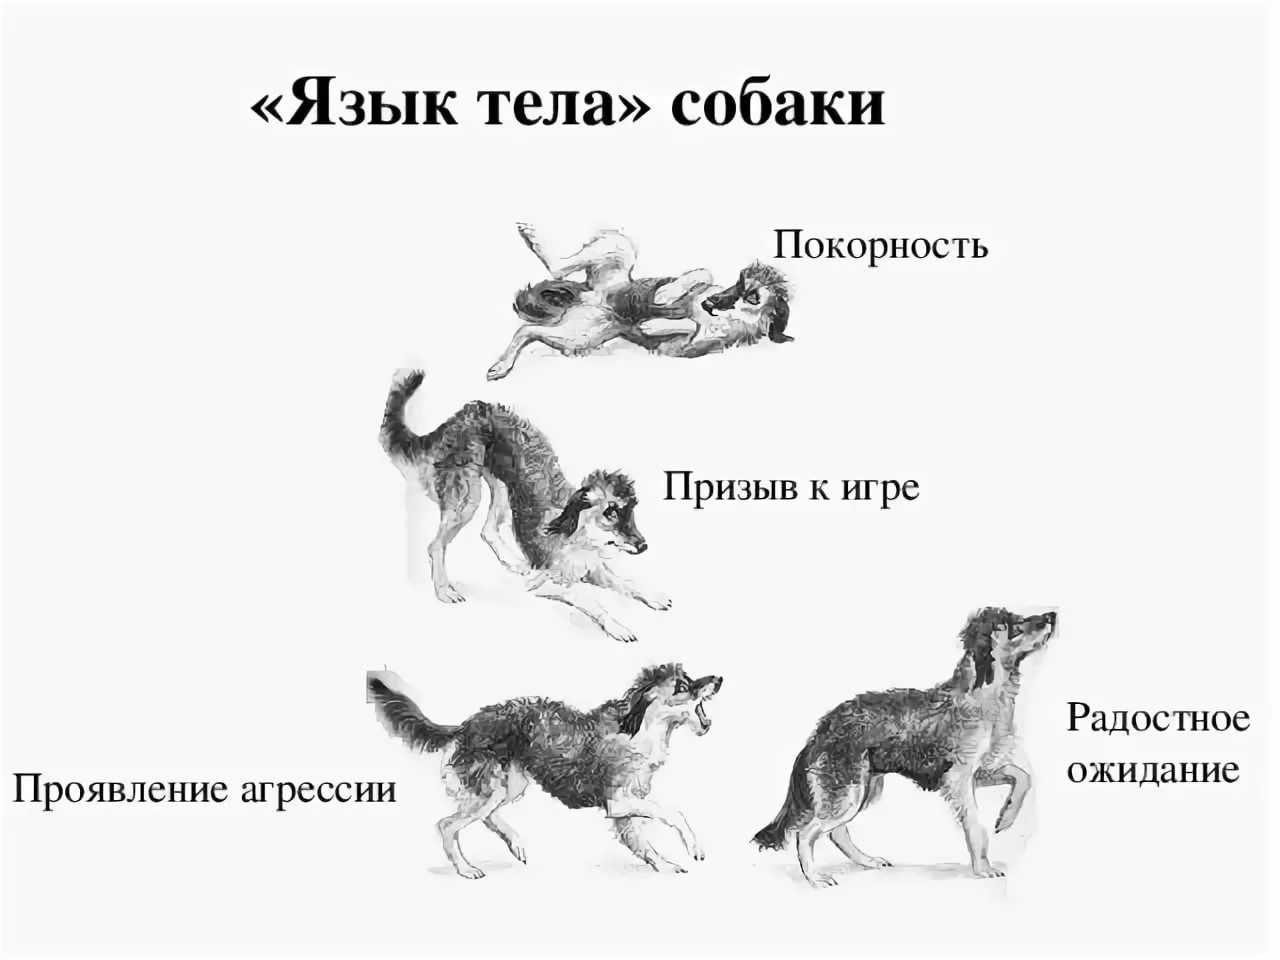 Почему воют собаки причина. Поведение собак. Язык тела собаки в картинках. Араедение собак. Виды поведения собак.